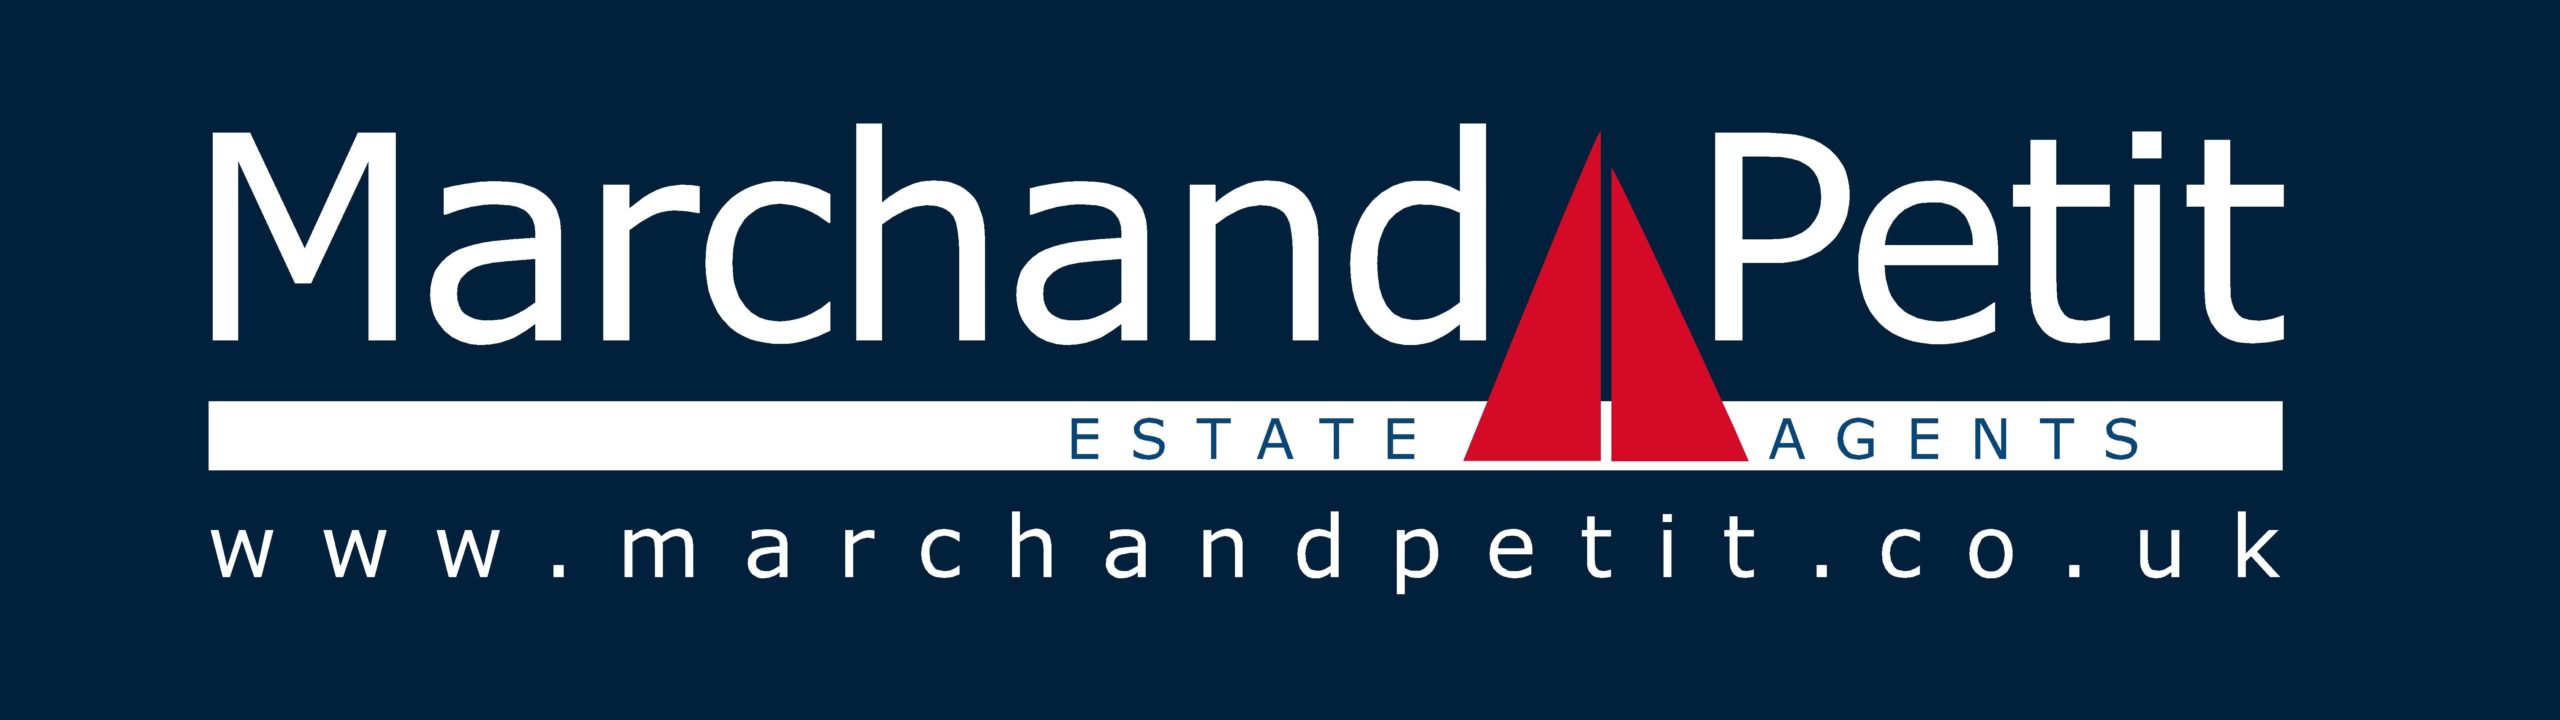 Marchand Petit Estate Agents